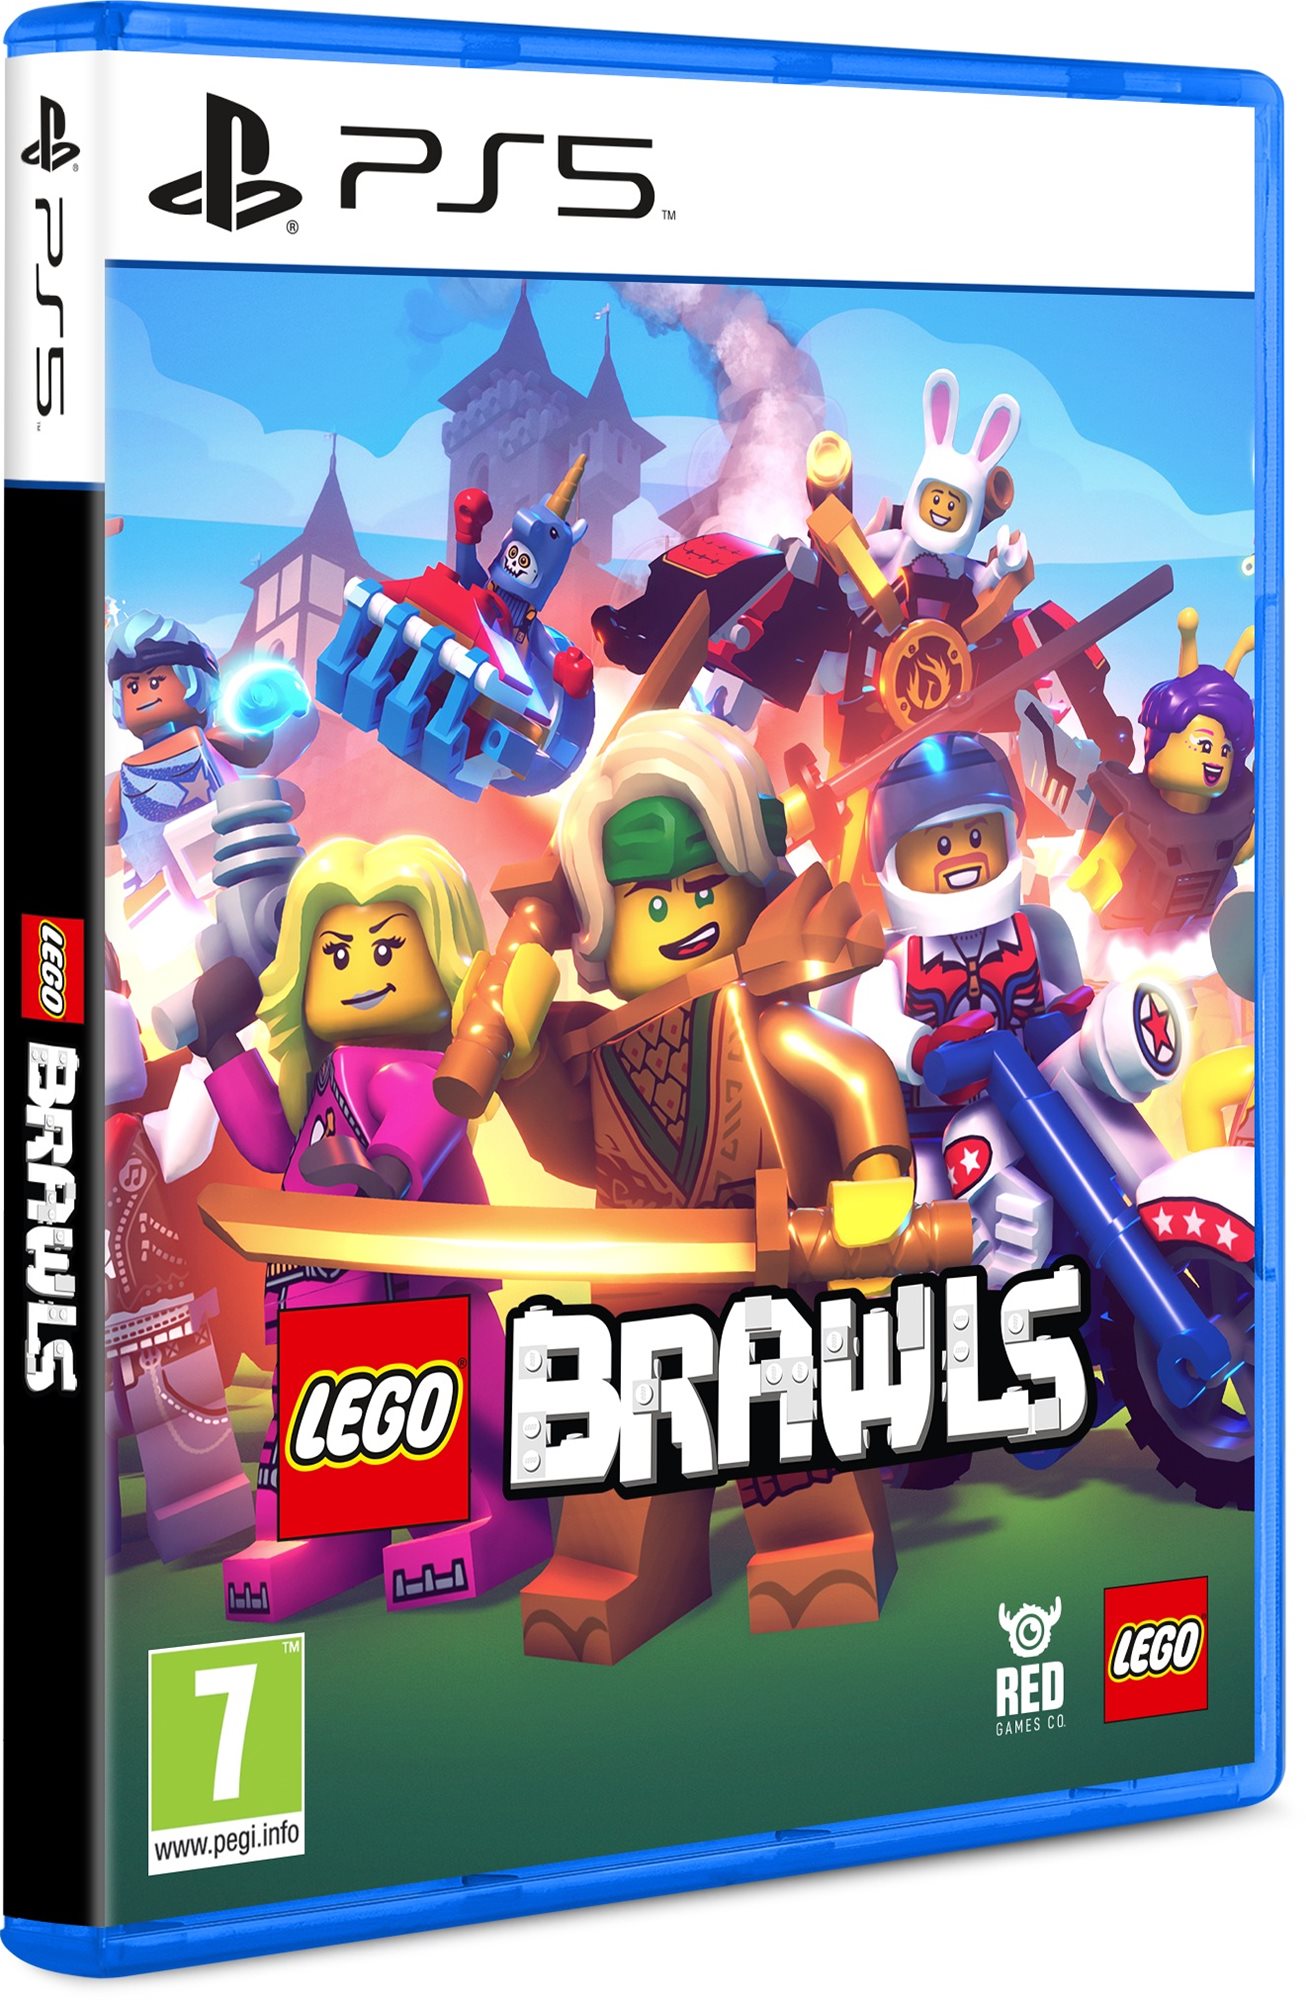 LEGO Brawls - PS5